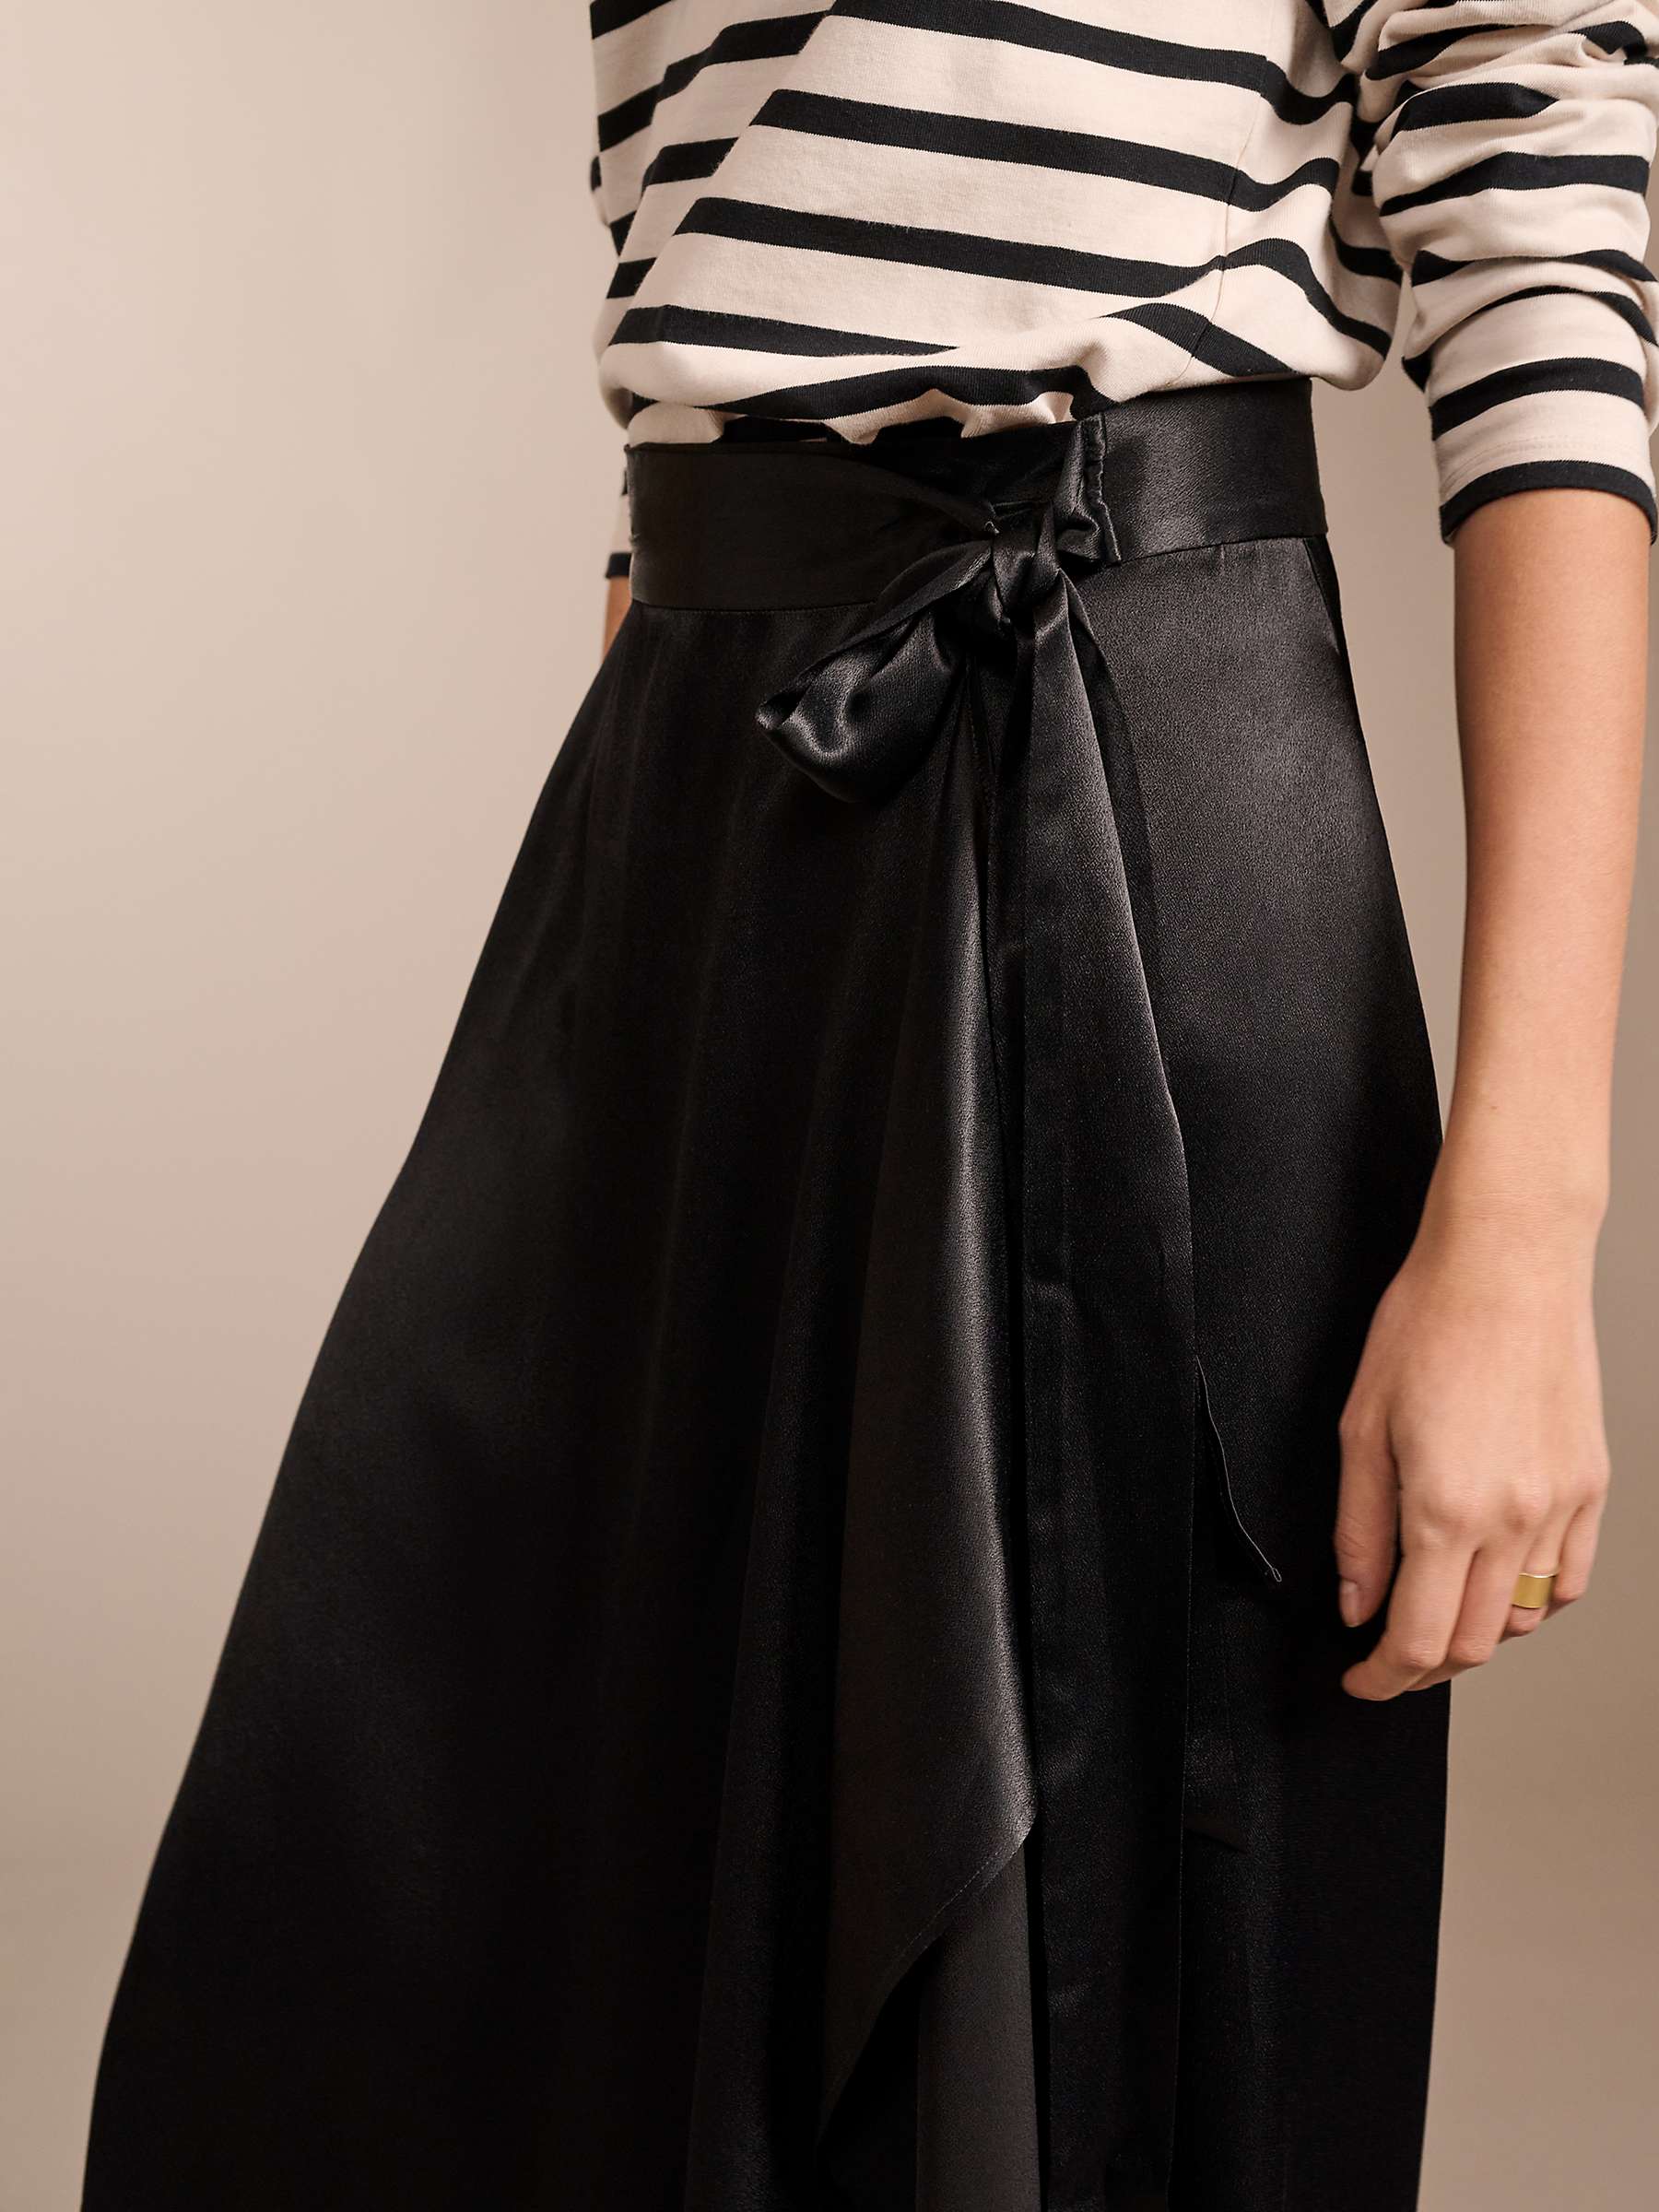 Buy Baukjen Federica Satin Crepe Wrap Midi Skirt, Caviar Black Online at johnlewis.com